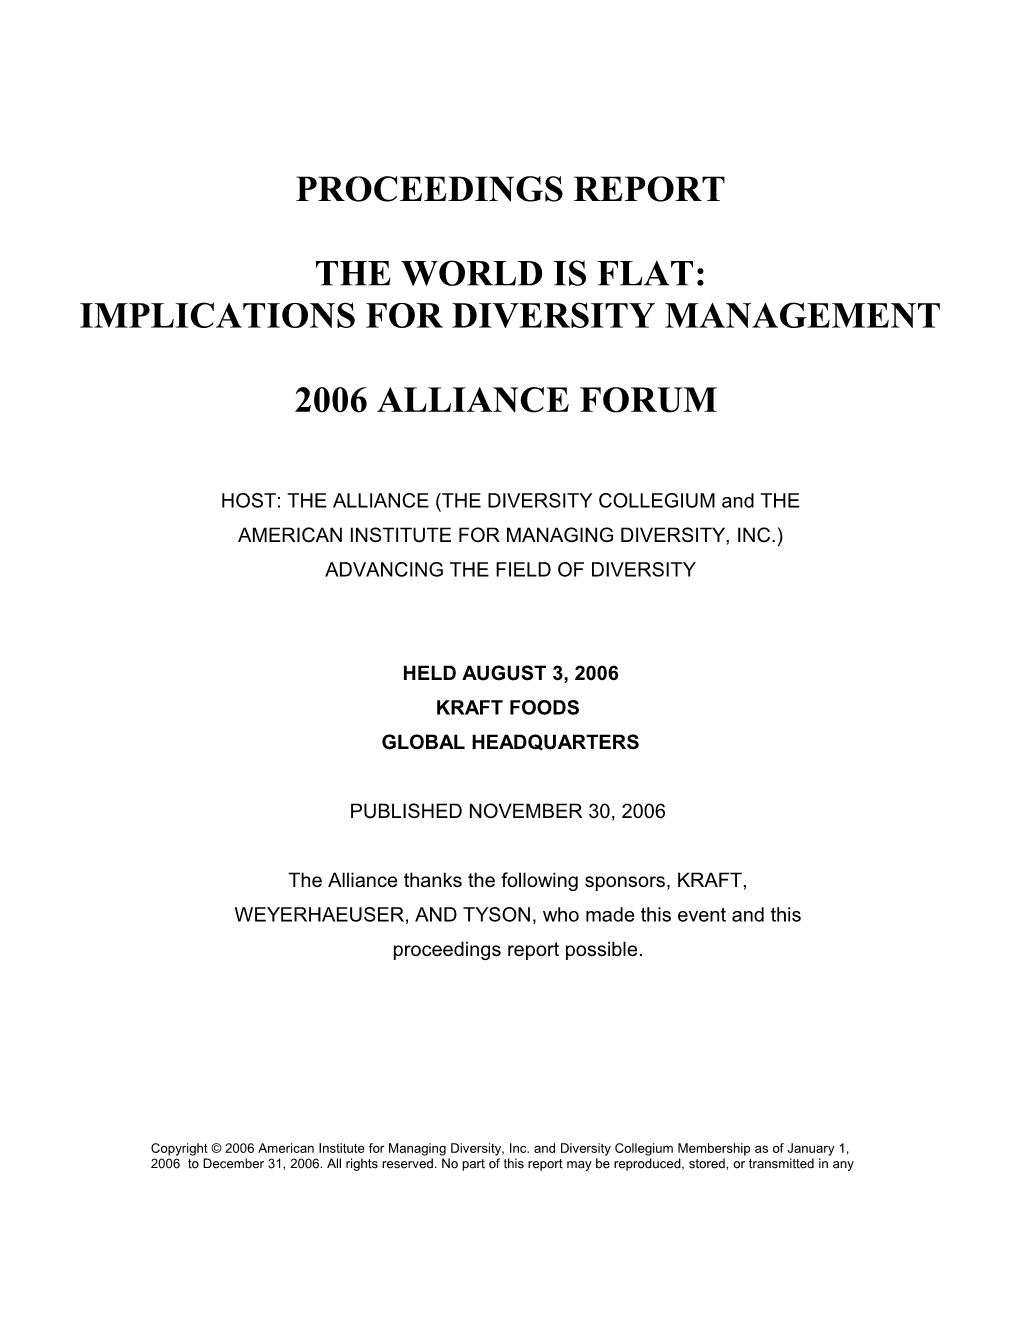 Proceedings Report